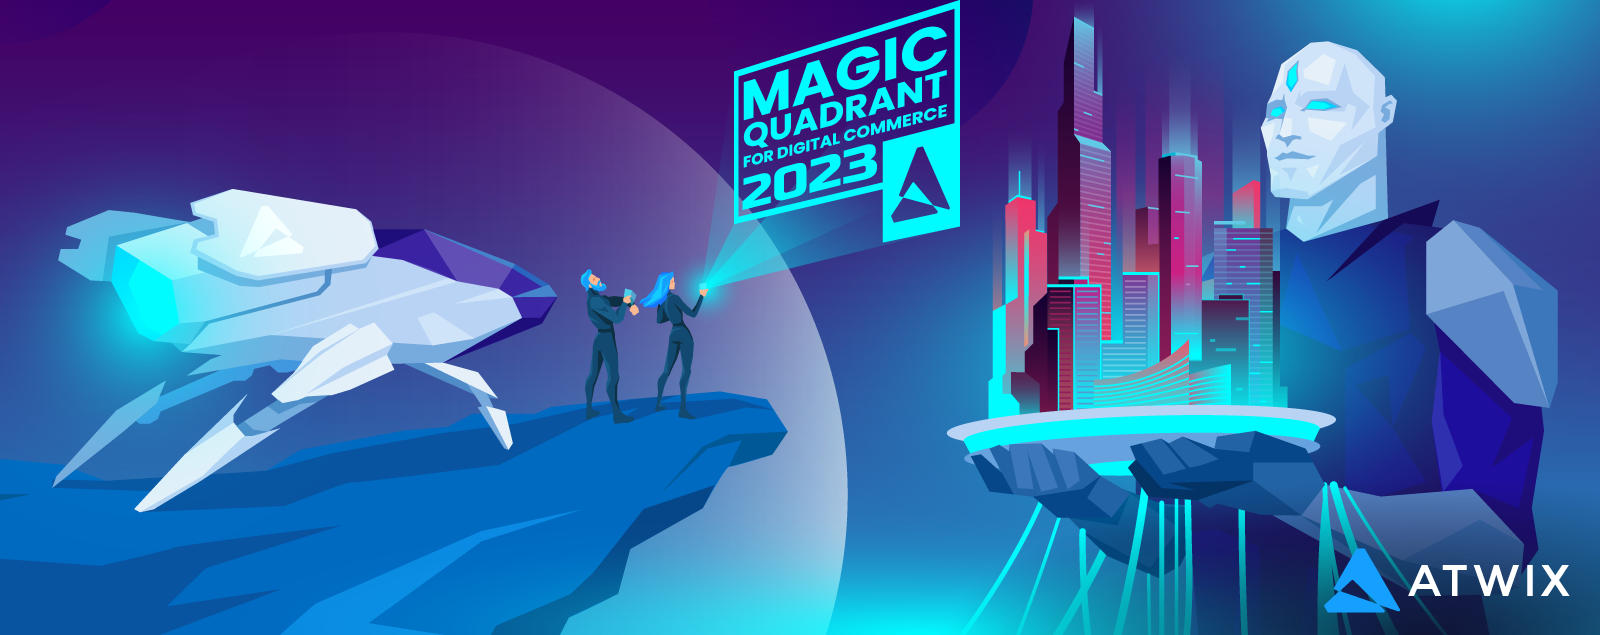 Gartner Magic Quadrant for Digital Commerce 2023 vs. 2022 unpacked